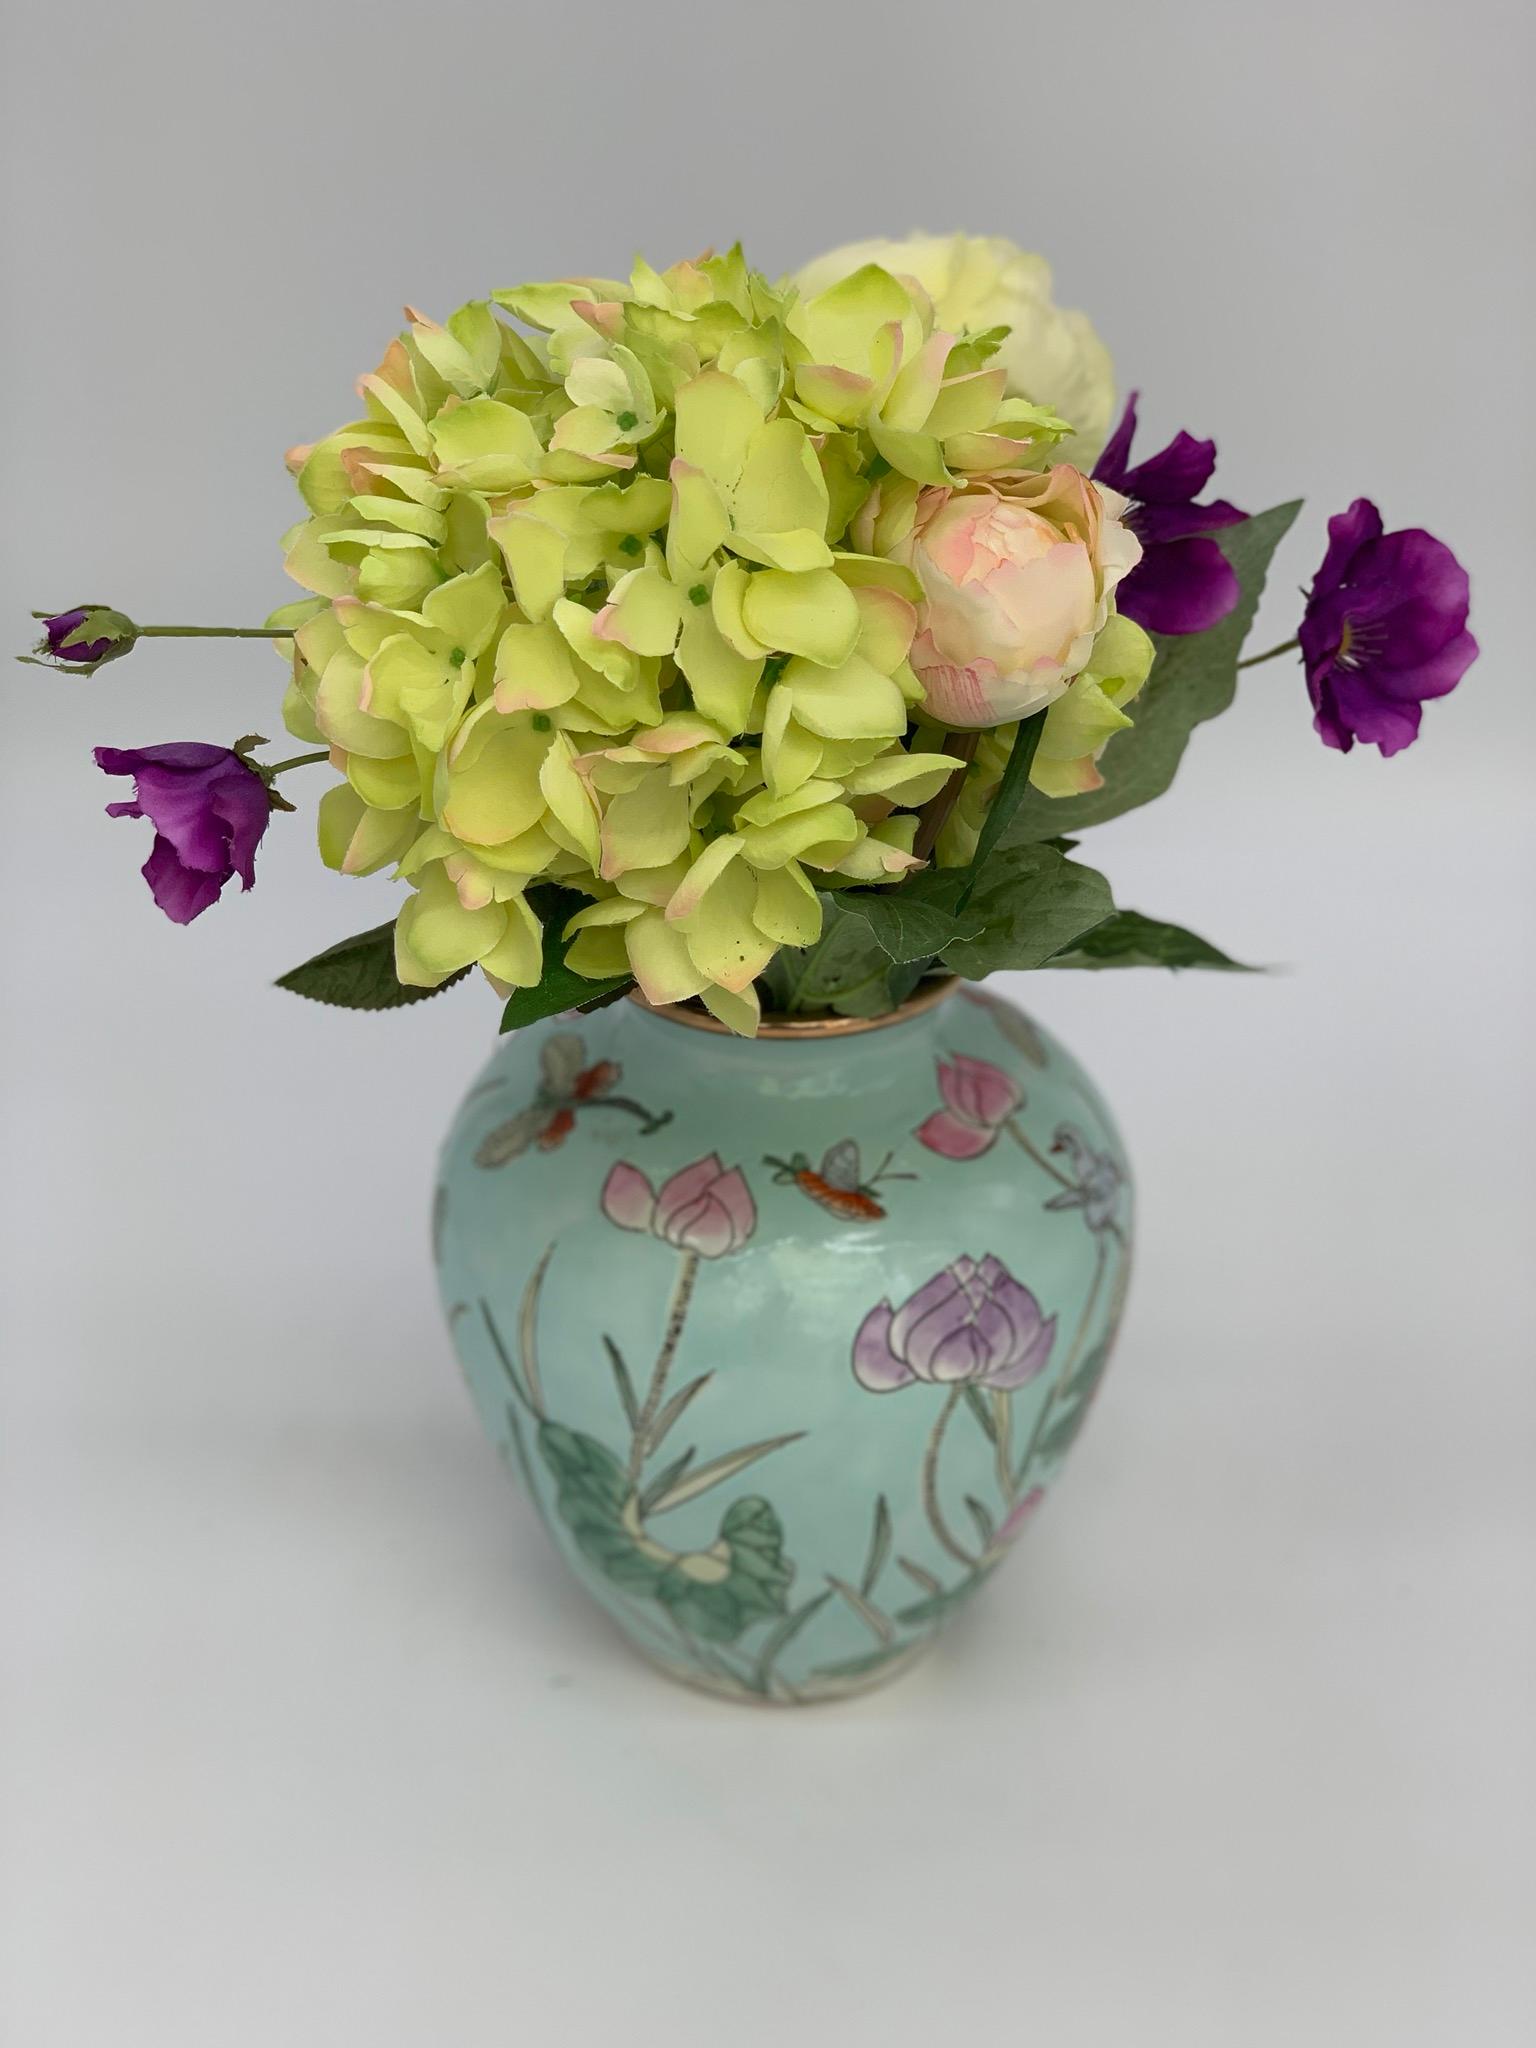 Beau vase décoratif Famille Rosé, Chine, vers le 20e siècle, avec petits oiseaux et bordure dorée. Le design complexe avec le rose, le violet, le jaune et le rouge rend ce vase magnifique pour toutes les décorations florales.